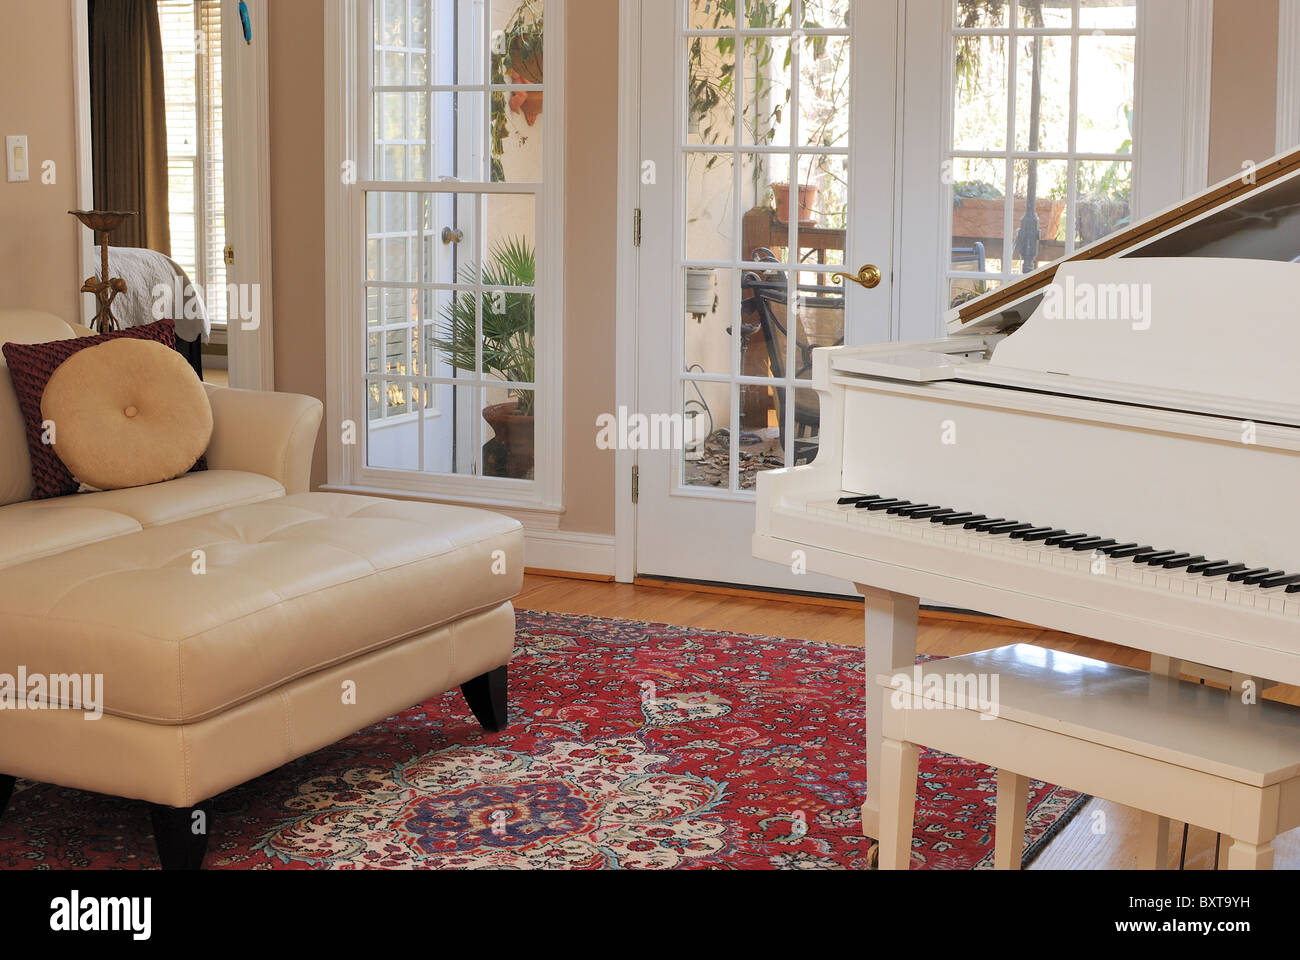 Salón interior contemporáneo con sofá, sillón, piano, y la vista de la ventana del patio. Foto de stock